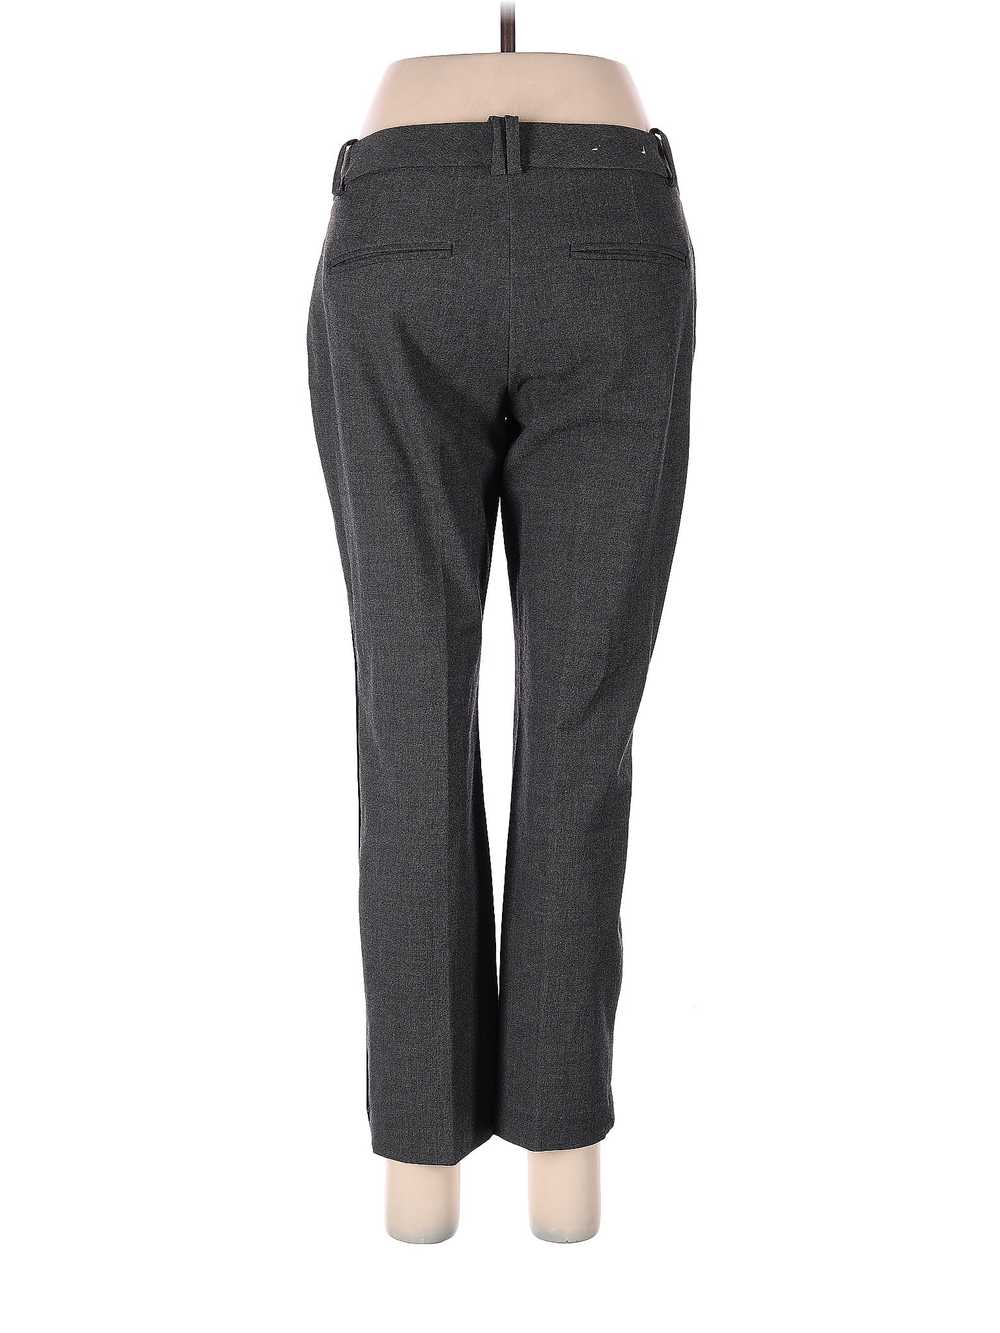 Calvin Klein Women Gray Dress Pants 2 - image 2